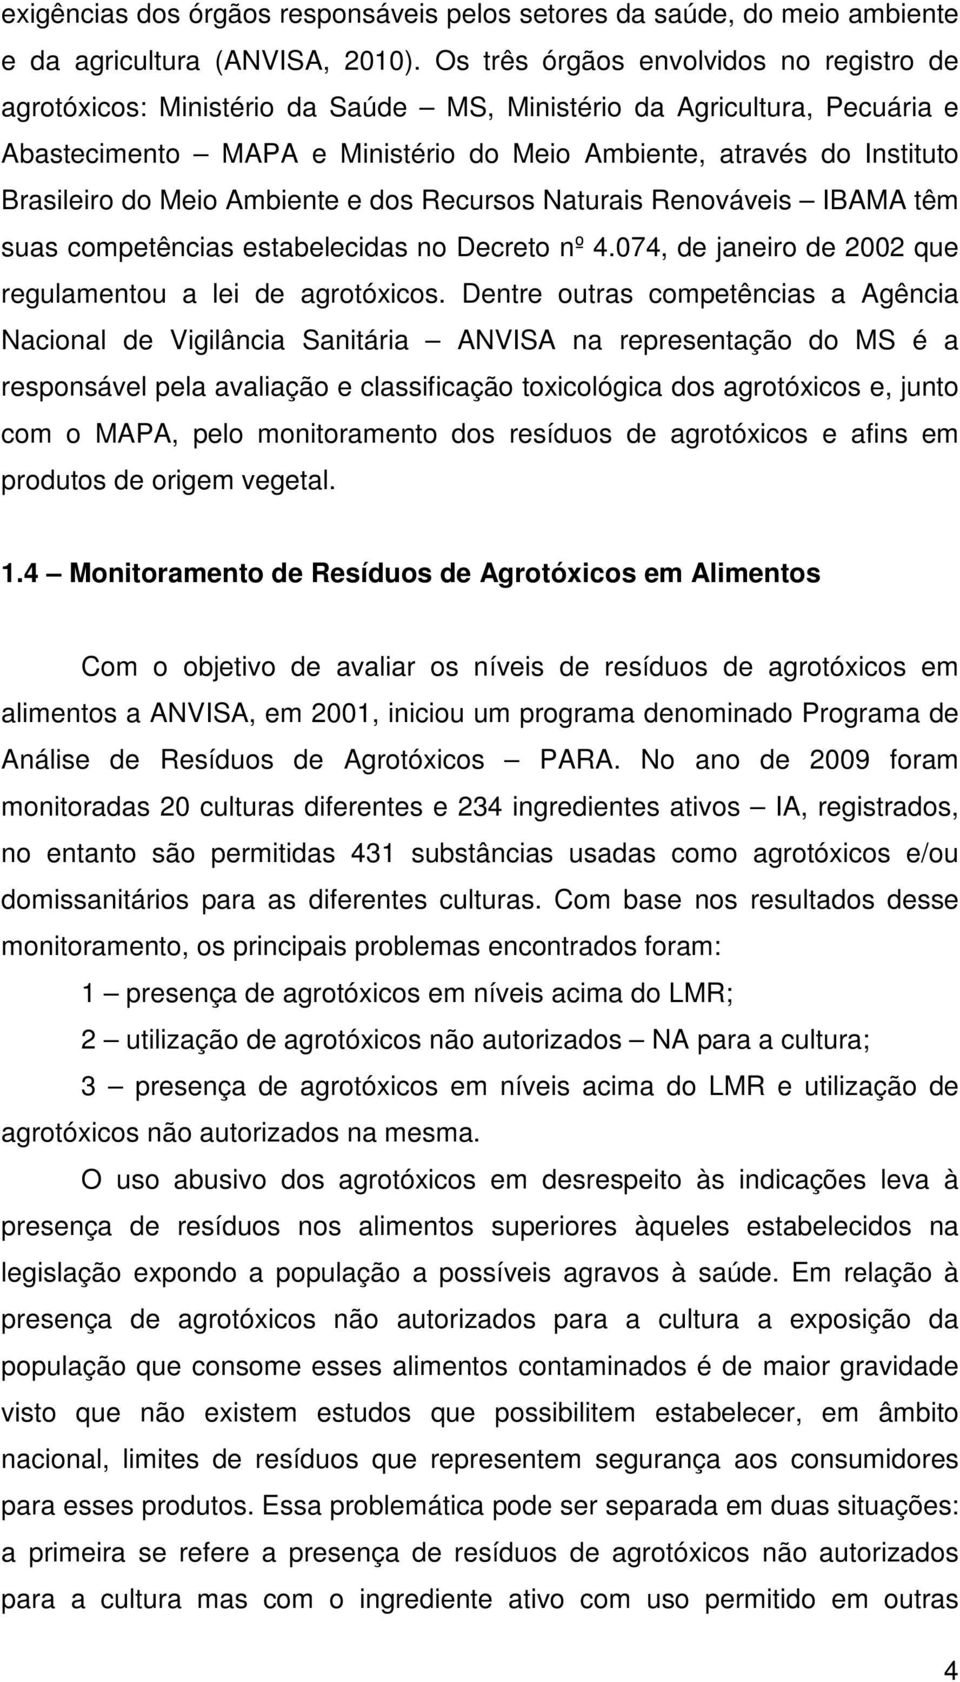 do Meio Ambiente e dos Recursos Naturais Renováveis IBAMA têm suas competências estabelecidas no Decreto nº 4.074, de janeiro de 2002 que regulamentou a lei de agrotóxicos.